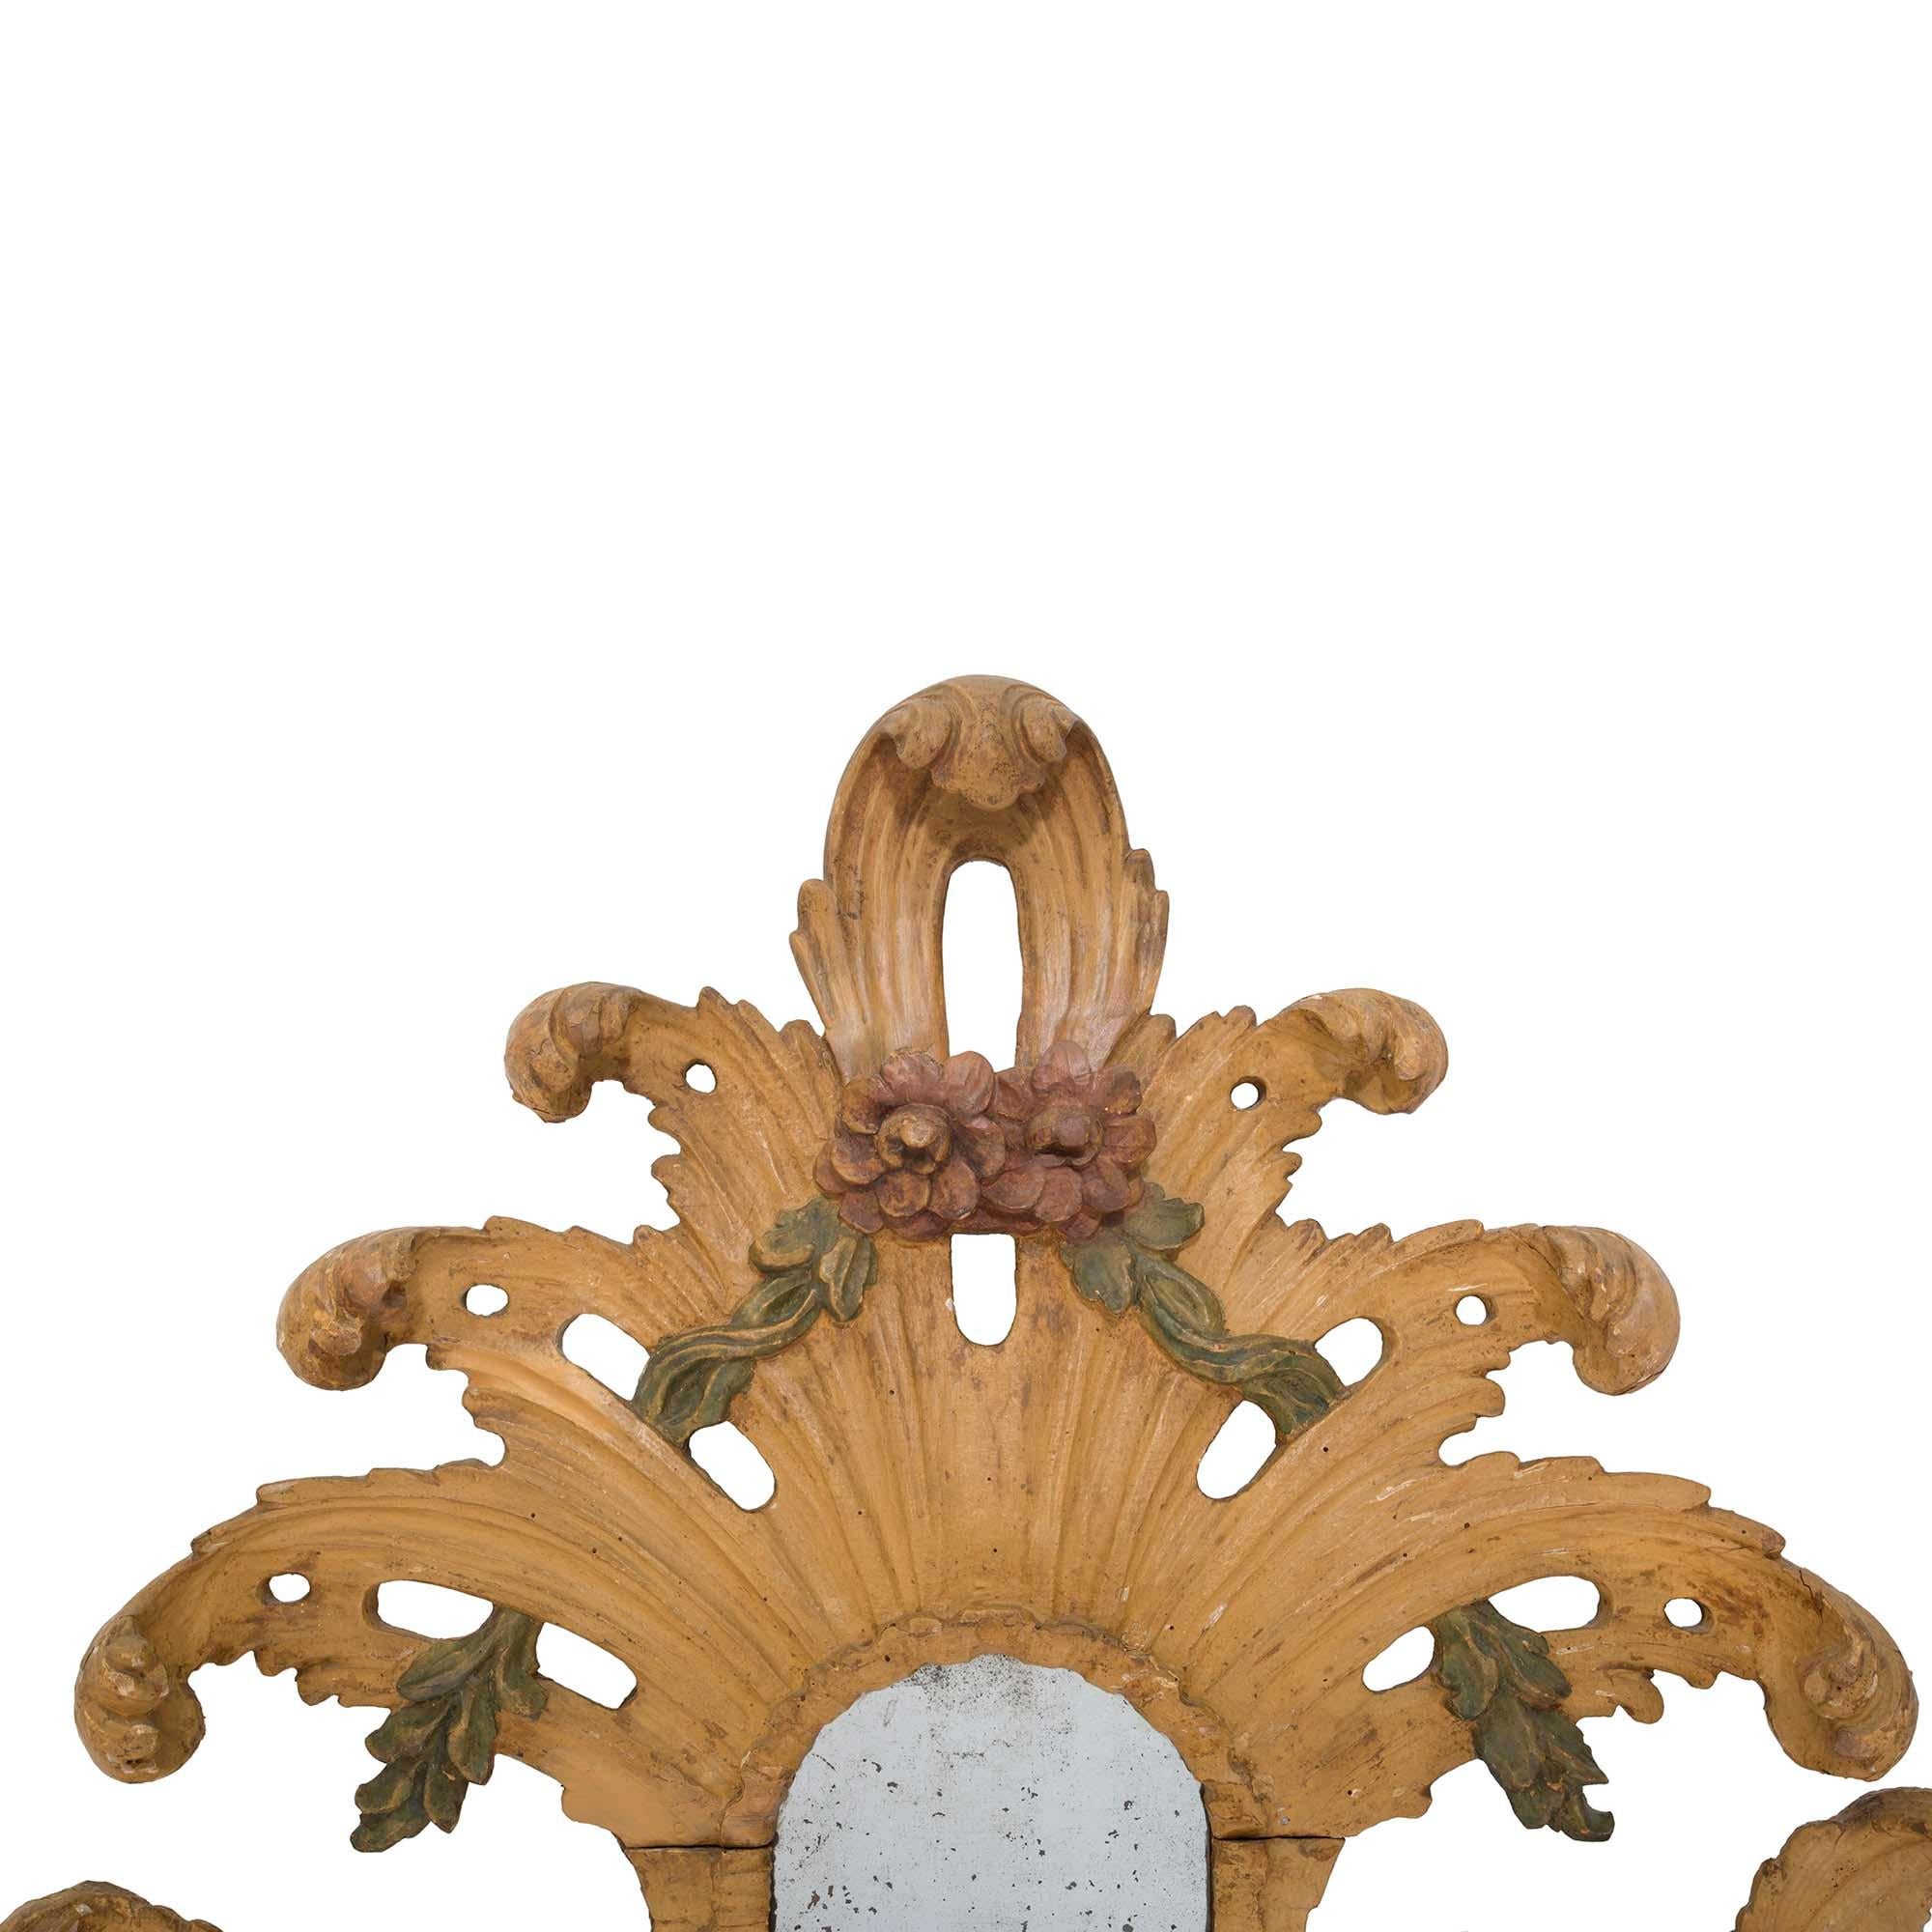 Ein schöner und einzigartiger italienischer polychromer Barockspiegel aus dem 18. Die originalen Spiegelplatten sind von äußerst dekorativen und reich geschnitzten polychromen Bordüren mit gesprenkelten Mustern und feinen verschnörkelten